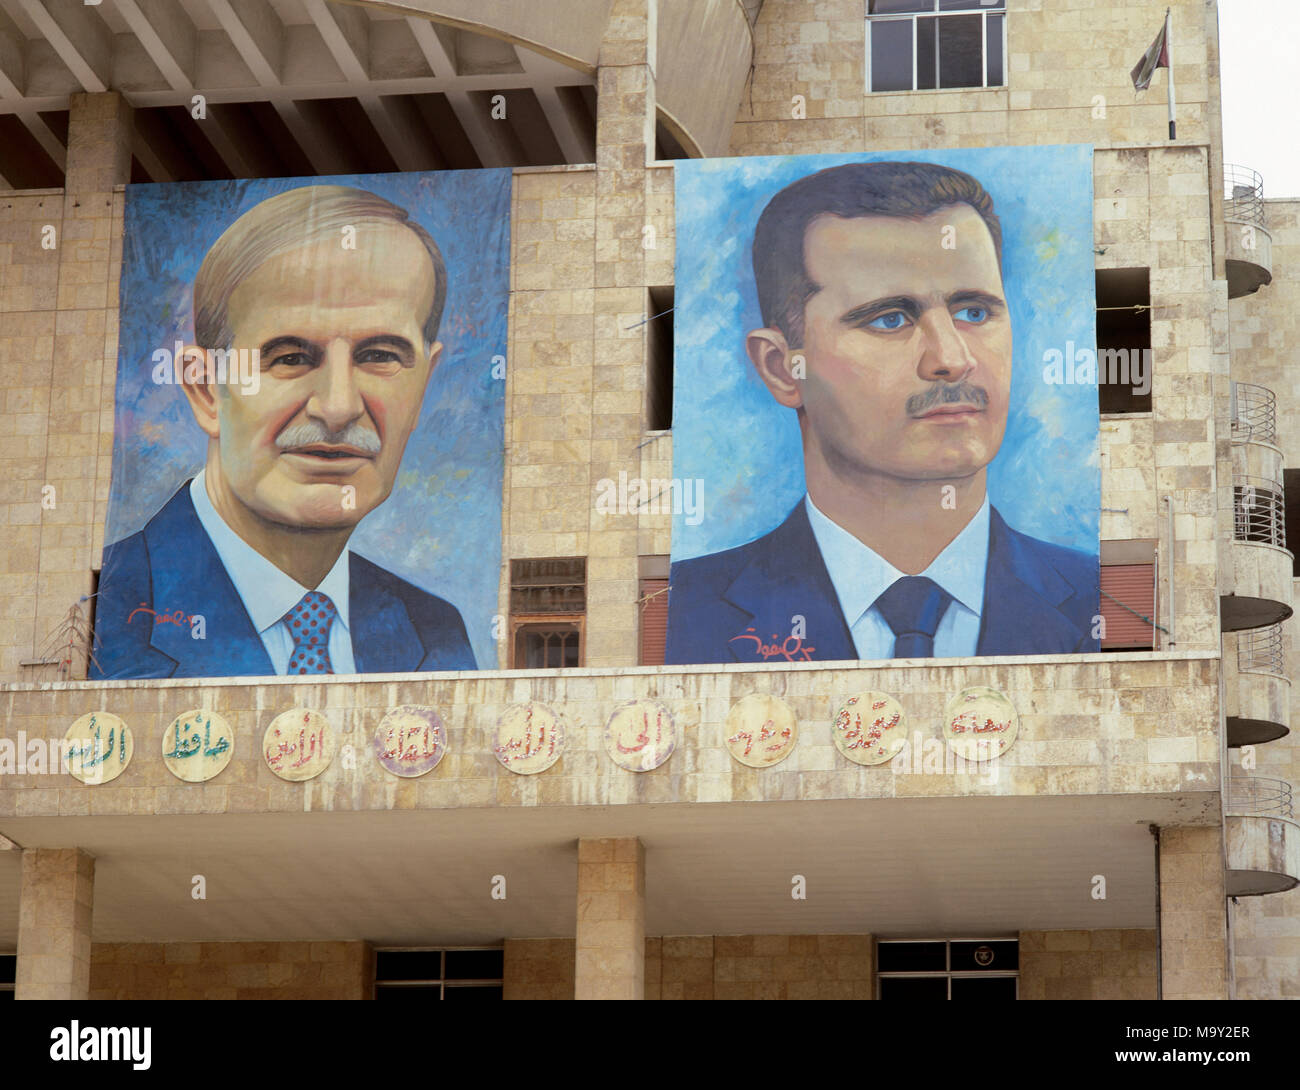 Presidenti di Siria. A sinistra: Hafez al-Asad (1930-2000), a destra: Basahr al-Assad (1965). Grandi ritratti. Il souk Hamidie. Damasco. Foto Ha preso prima della guerra civile. Foto Stock